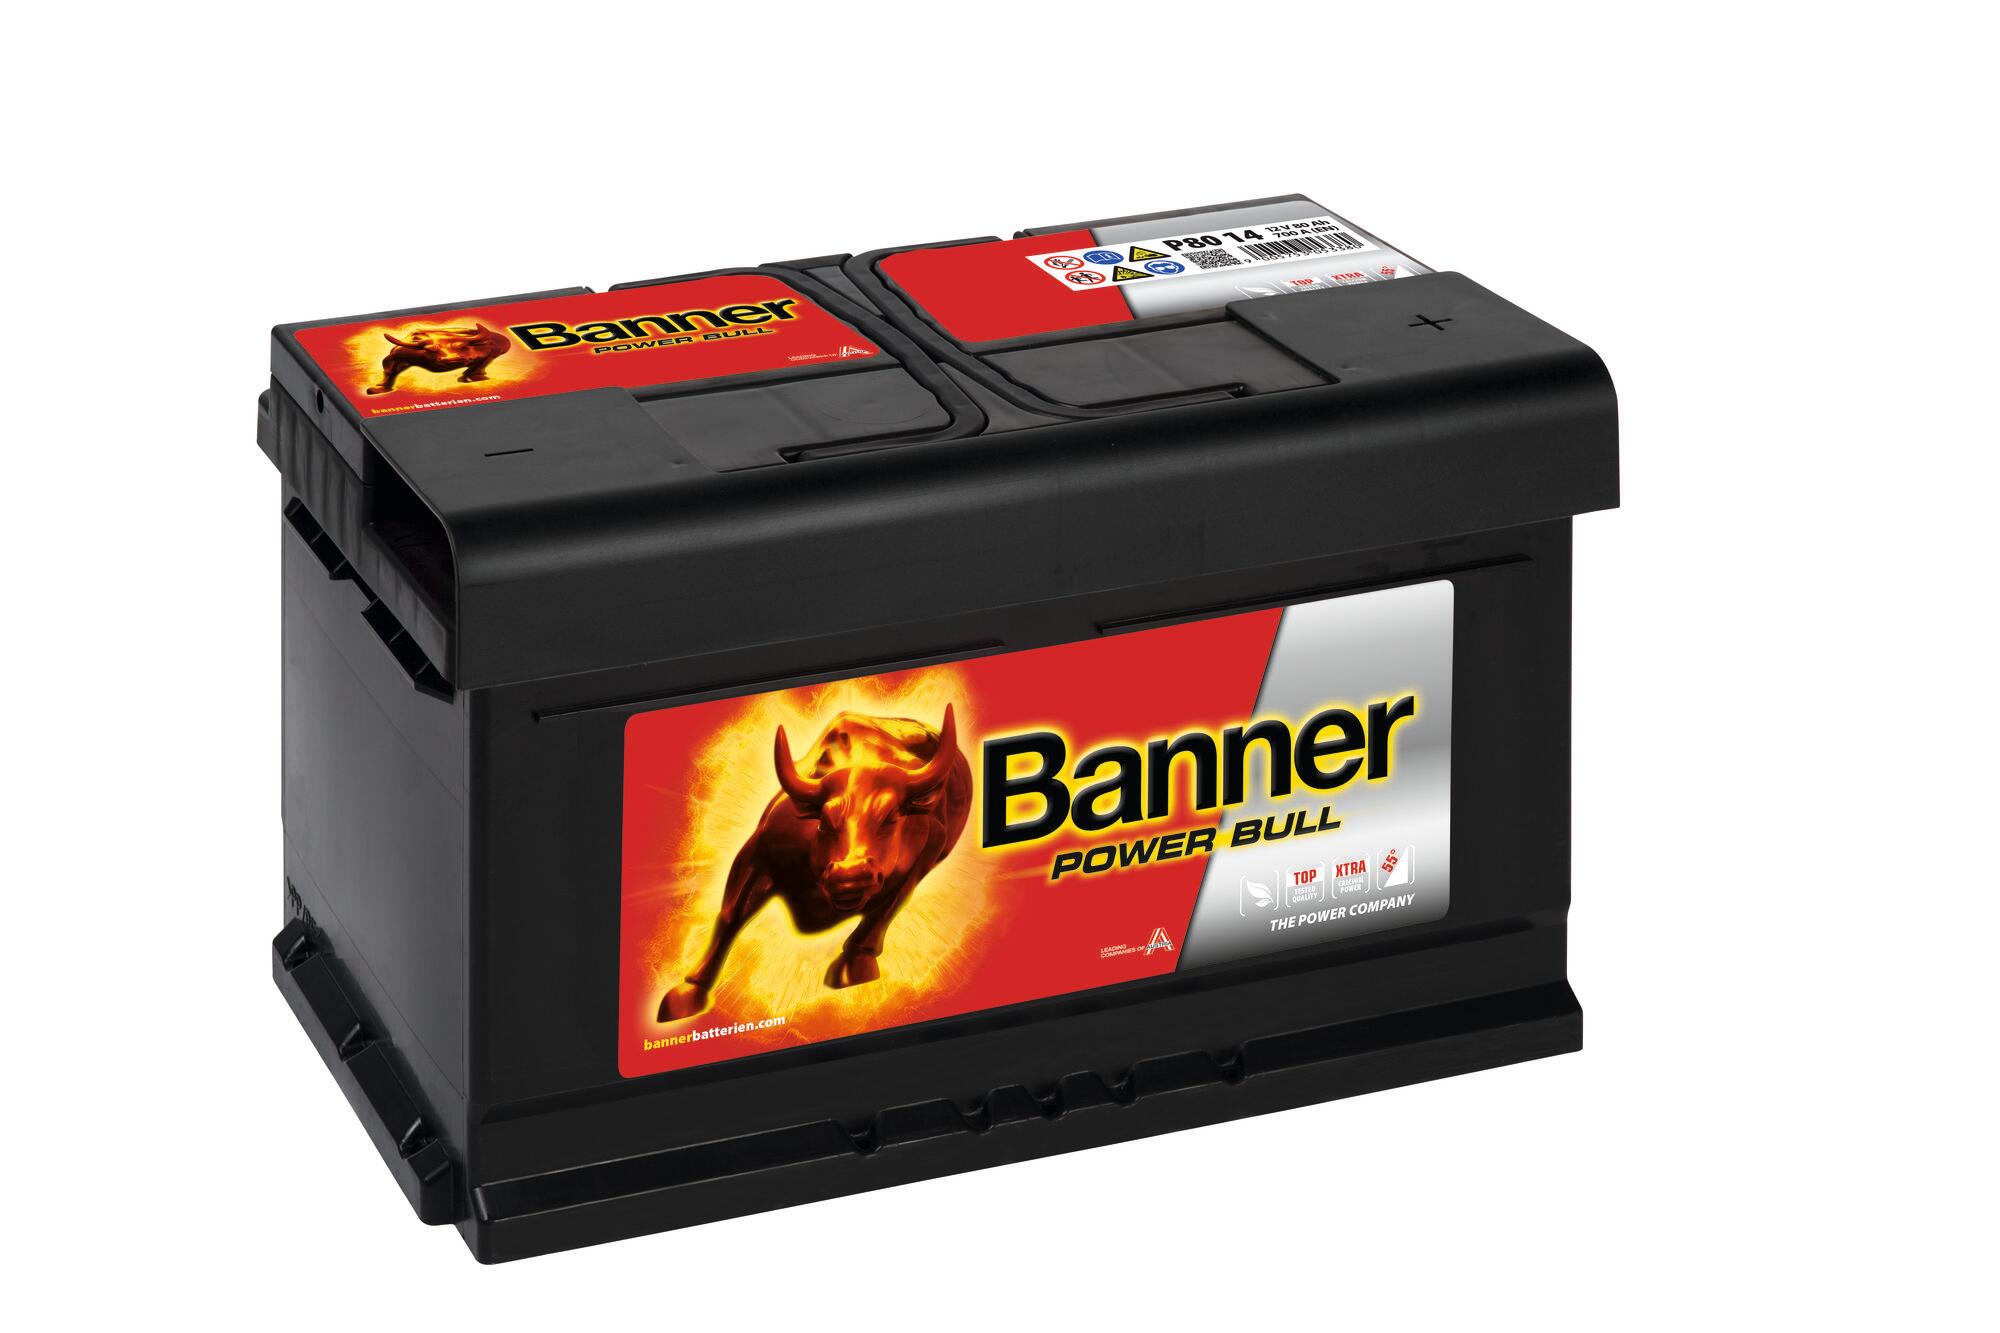 Starter-Batterie 80 Ah / 700 A (EN)Preis inkl. Batteriepfand gemäß §10 BattG